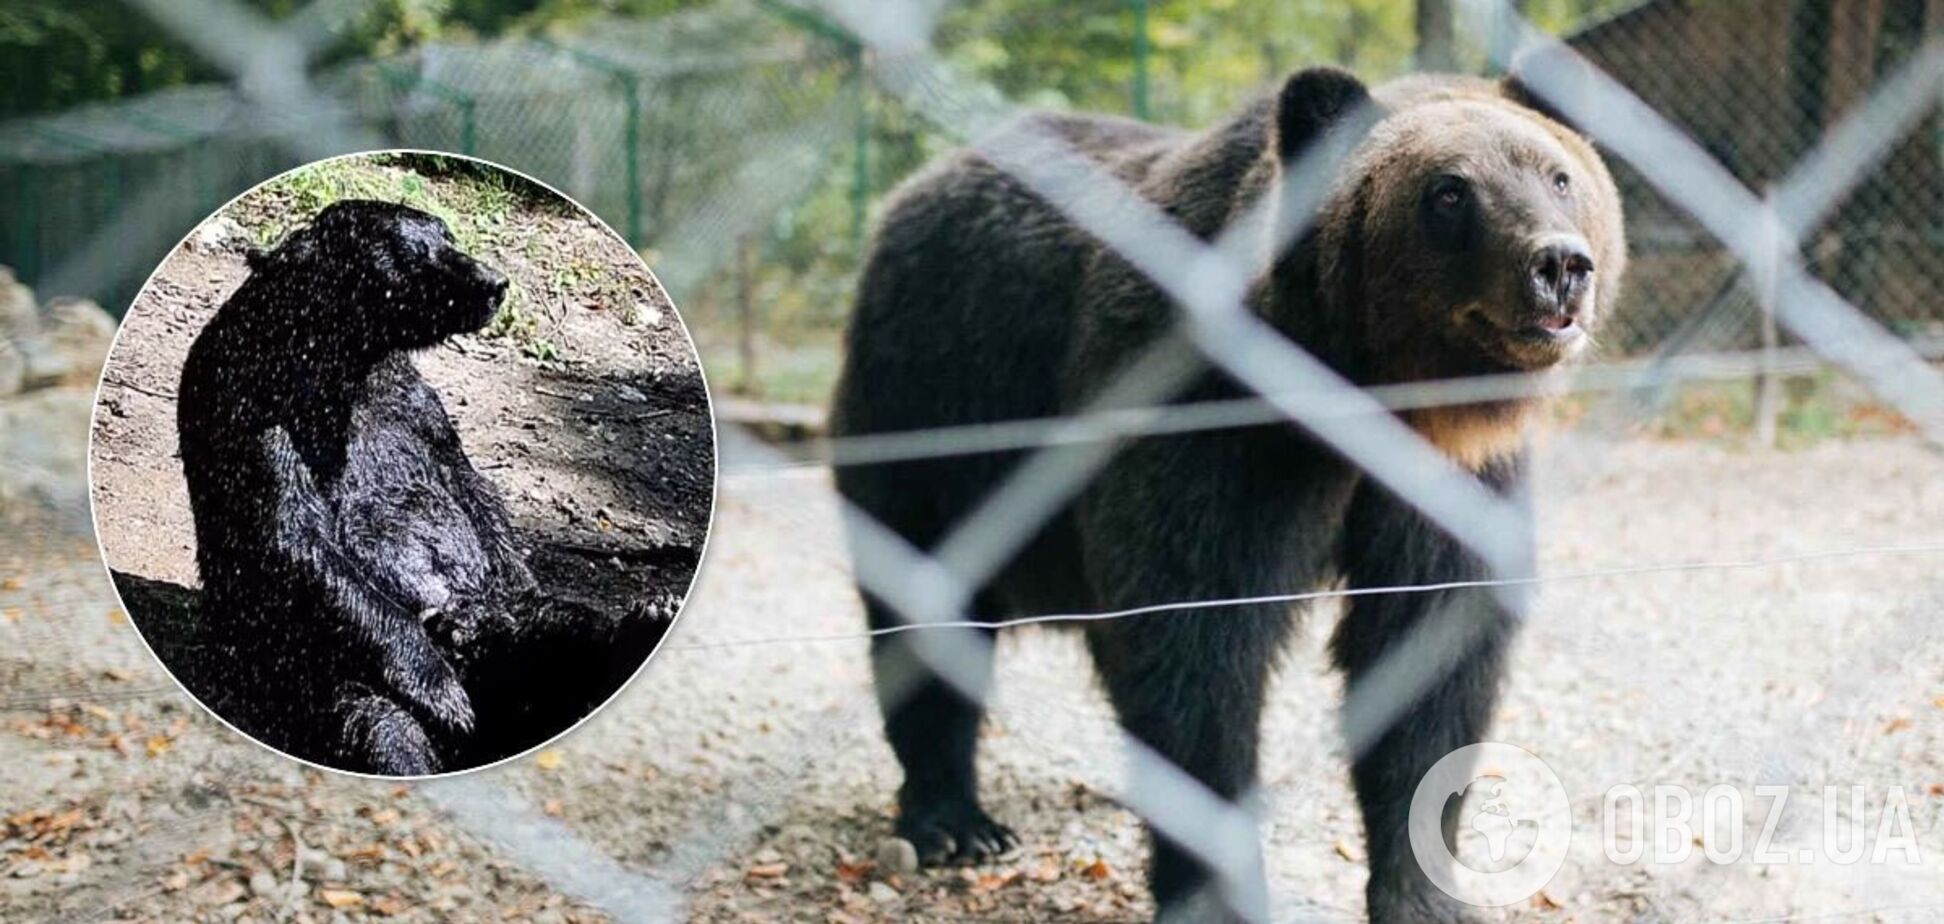 Відео з приймаючим душ українським ведмедем стало вірусним